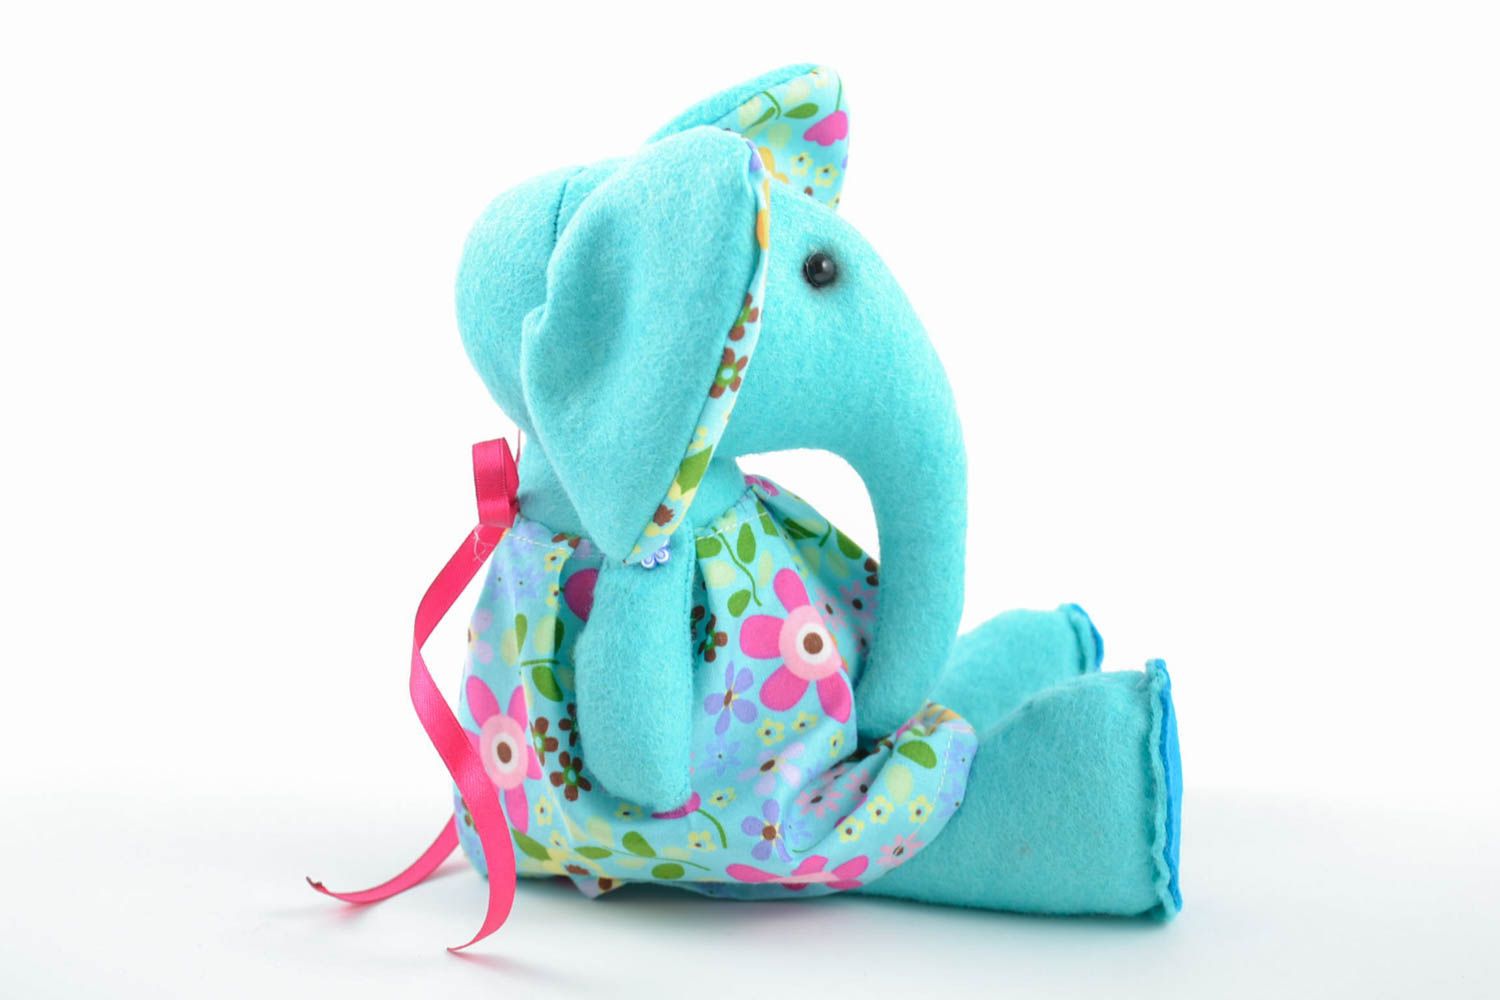 Мягкая игрушка слон ручной работы авторская красивая стильная из ткани для детей фото 3